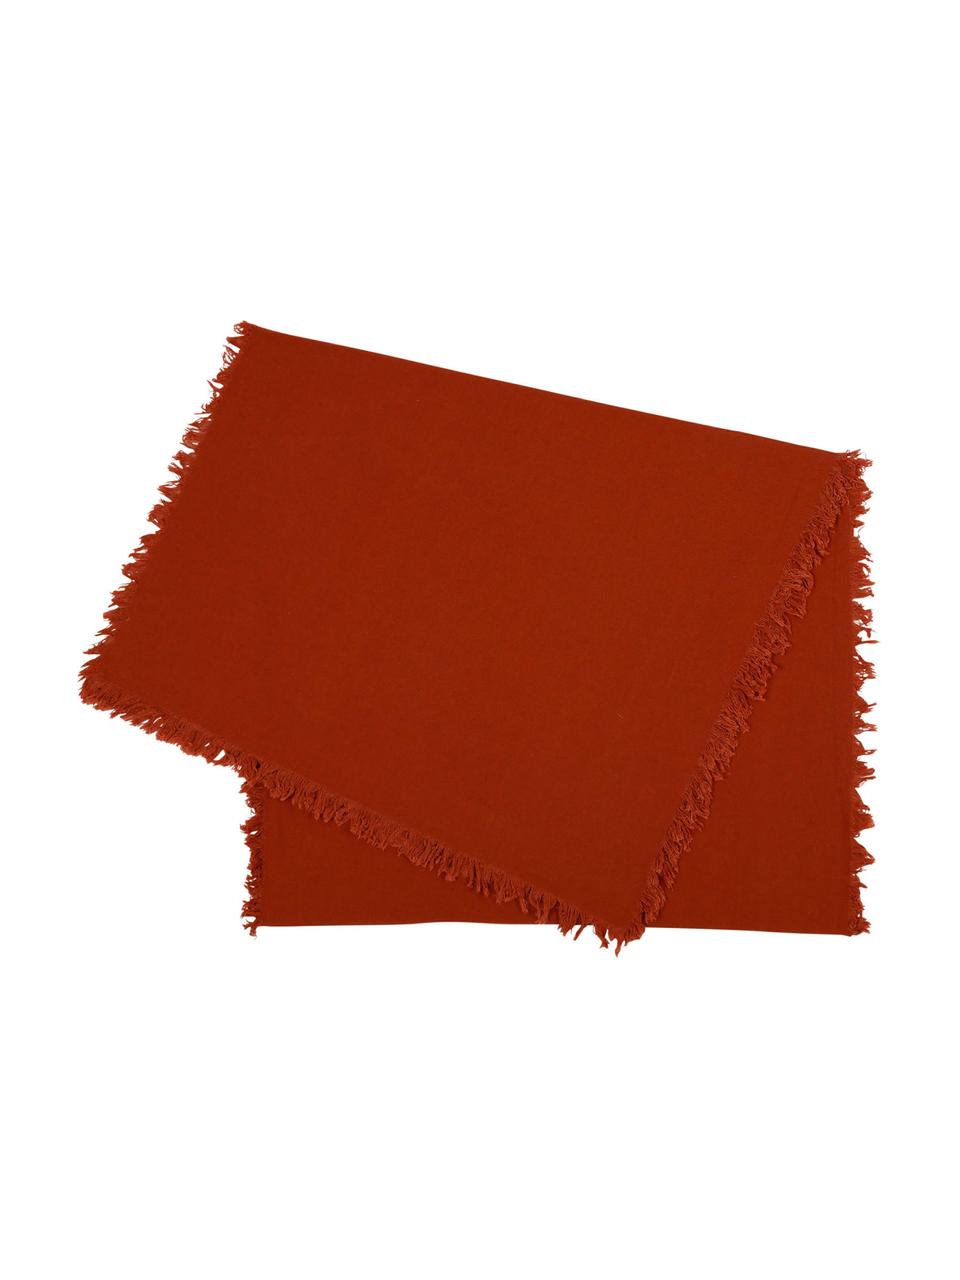 Katoenen tafelloper Nalia in rood met franjes, Katoen, Rood, B 50 x L 160 cm